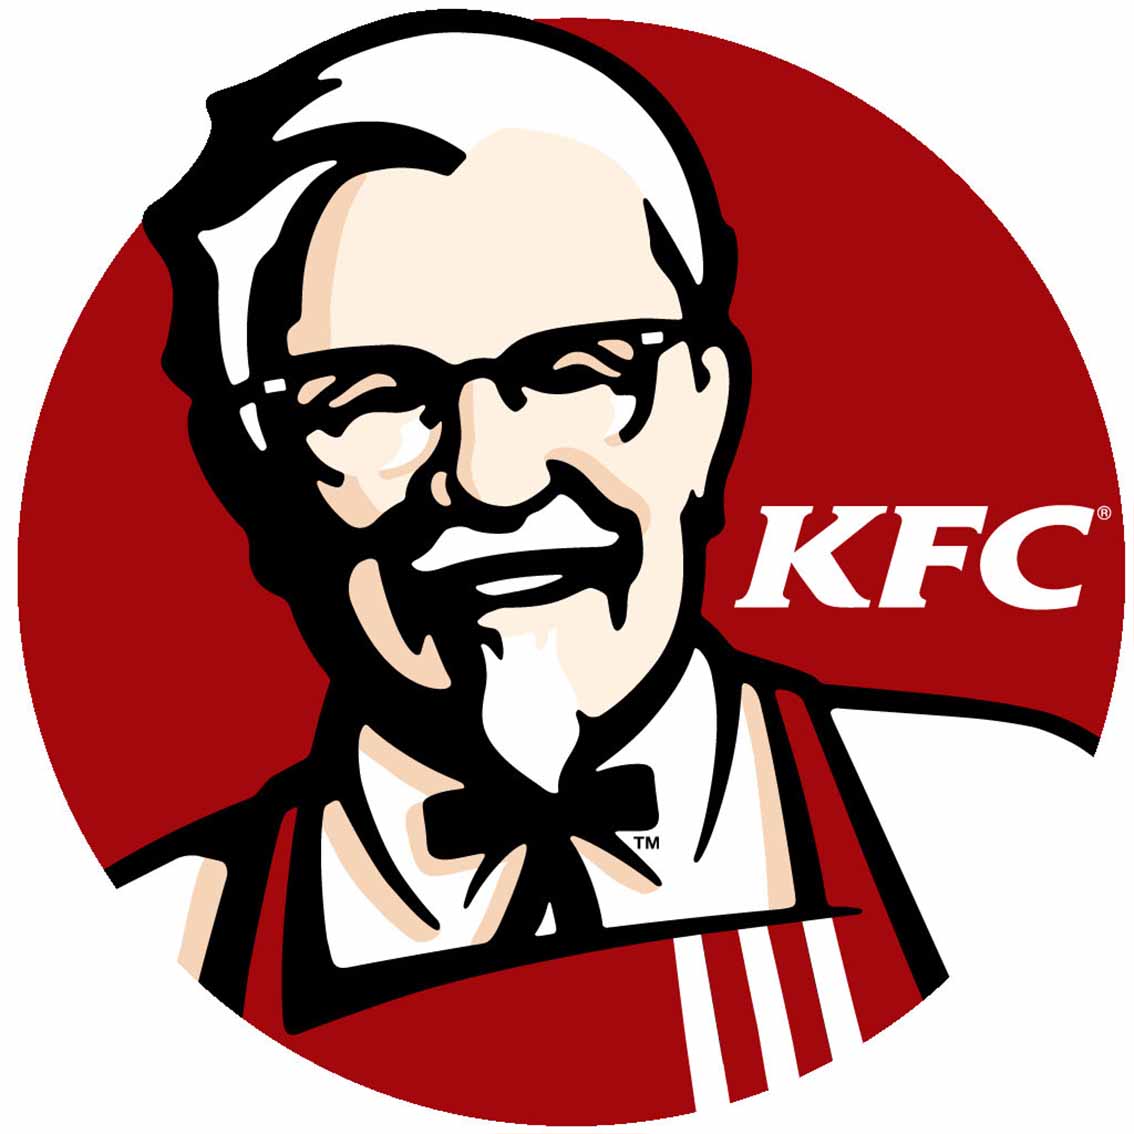 穷鬼套餐！KFC肯德基汉堡辣翅套餐限时£3.99啦！一个汉堡两个辣翅